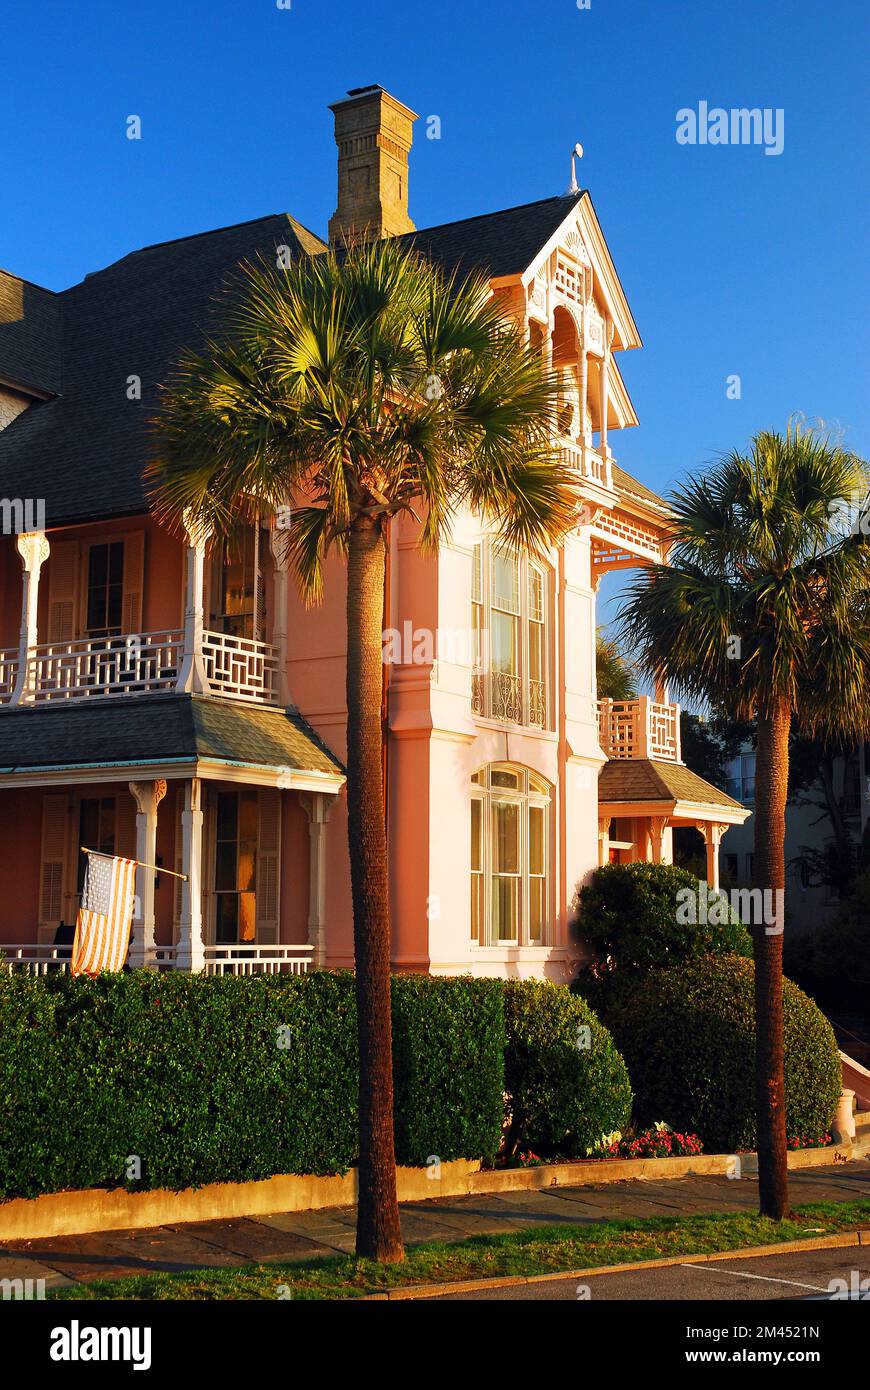 La maison Charles Drayton est une demeure ancestrale d'Antebellum sur le front de mer à Charleston, Caroline du Sud Banque D'Images